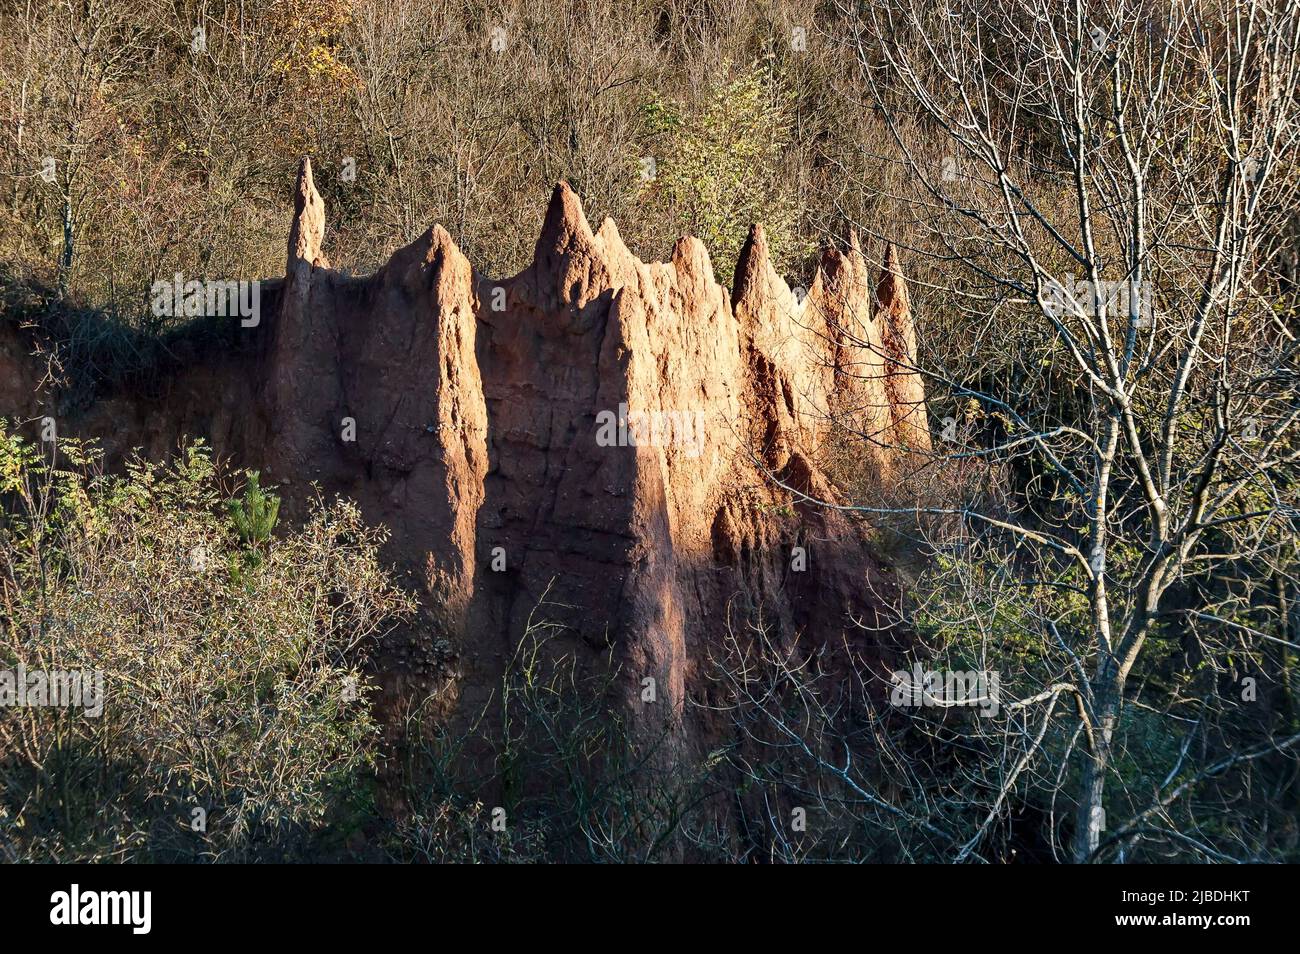 Les pyramides de Katyn aux formes pointues et de couleur brun rougeâtre, situées au nord-est du village de Katina sur les pentes méridionales de Stara Planina, S. Banque D'Images